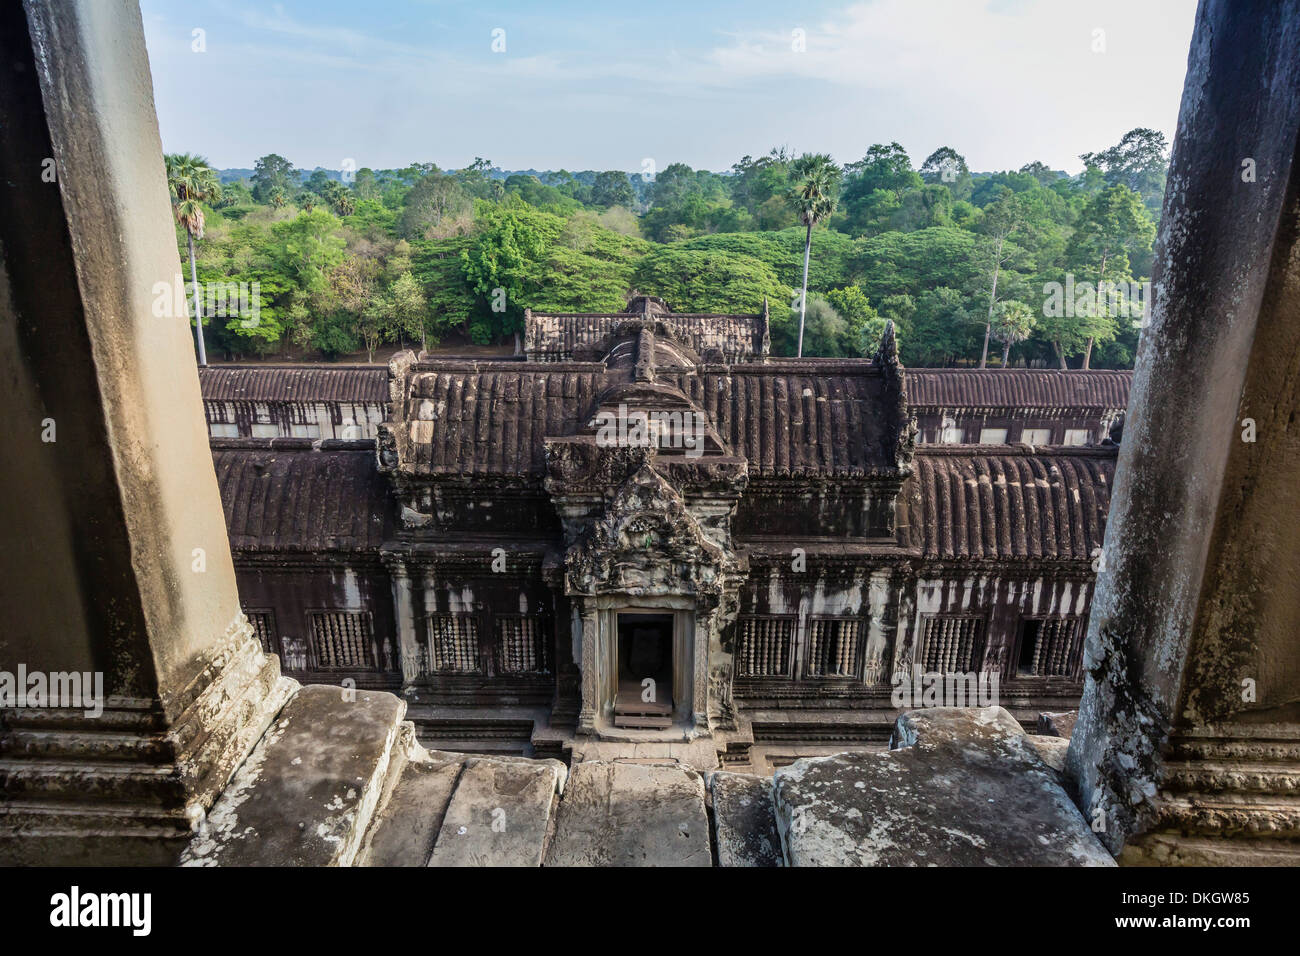 Terrasse supérieure à Angkor Wat, Angkor, Site du patrimoine mondial de l'UNESCO, la Province de Siem Reap, Cambodge, Indochine, Asie du Sud, Asie Banque D'Images